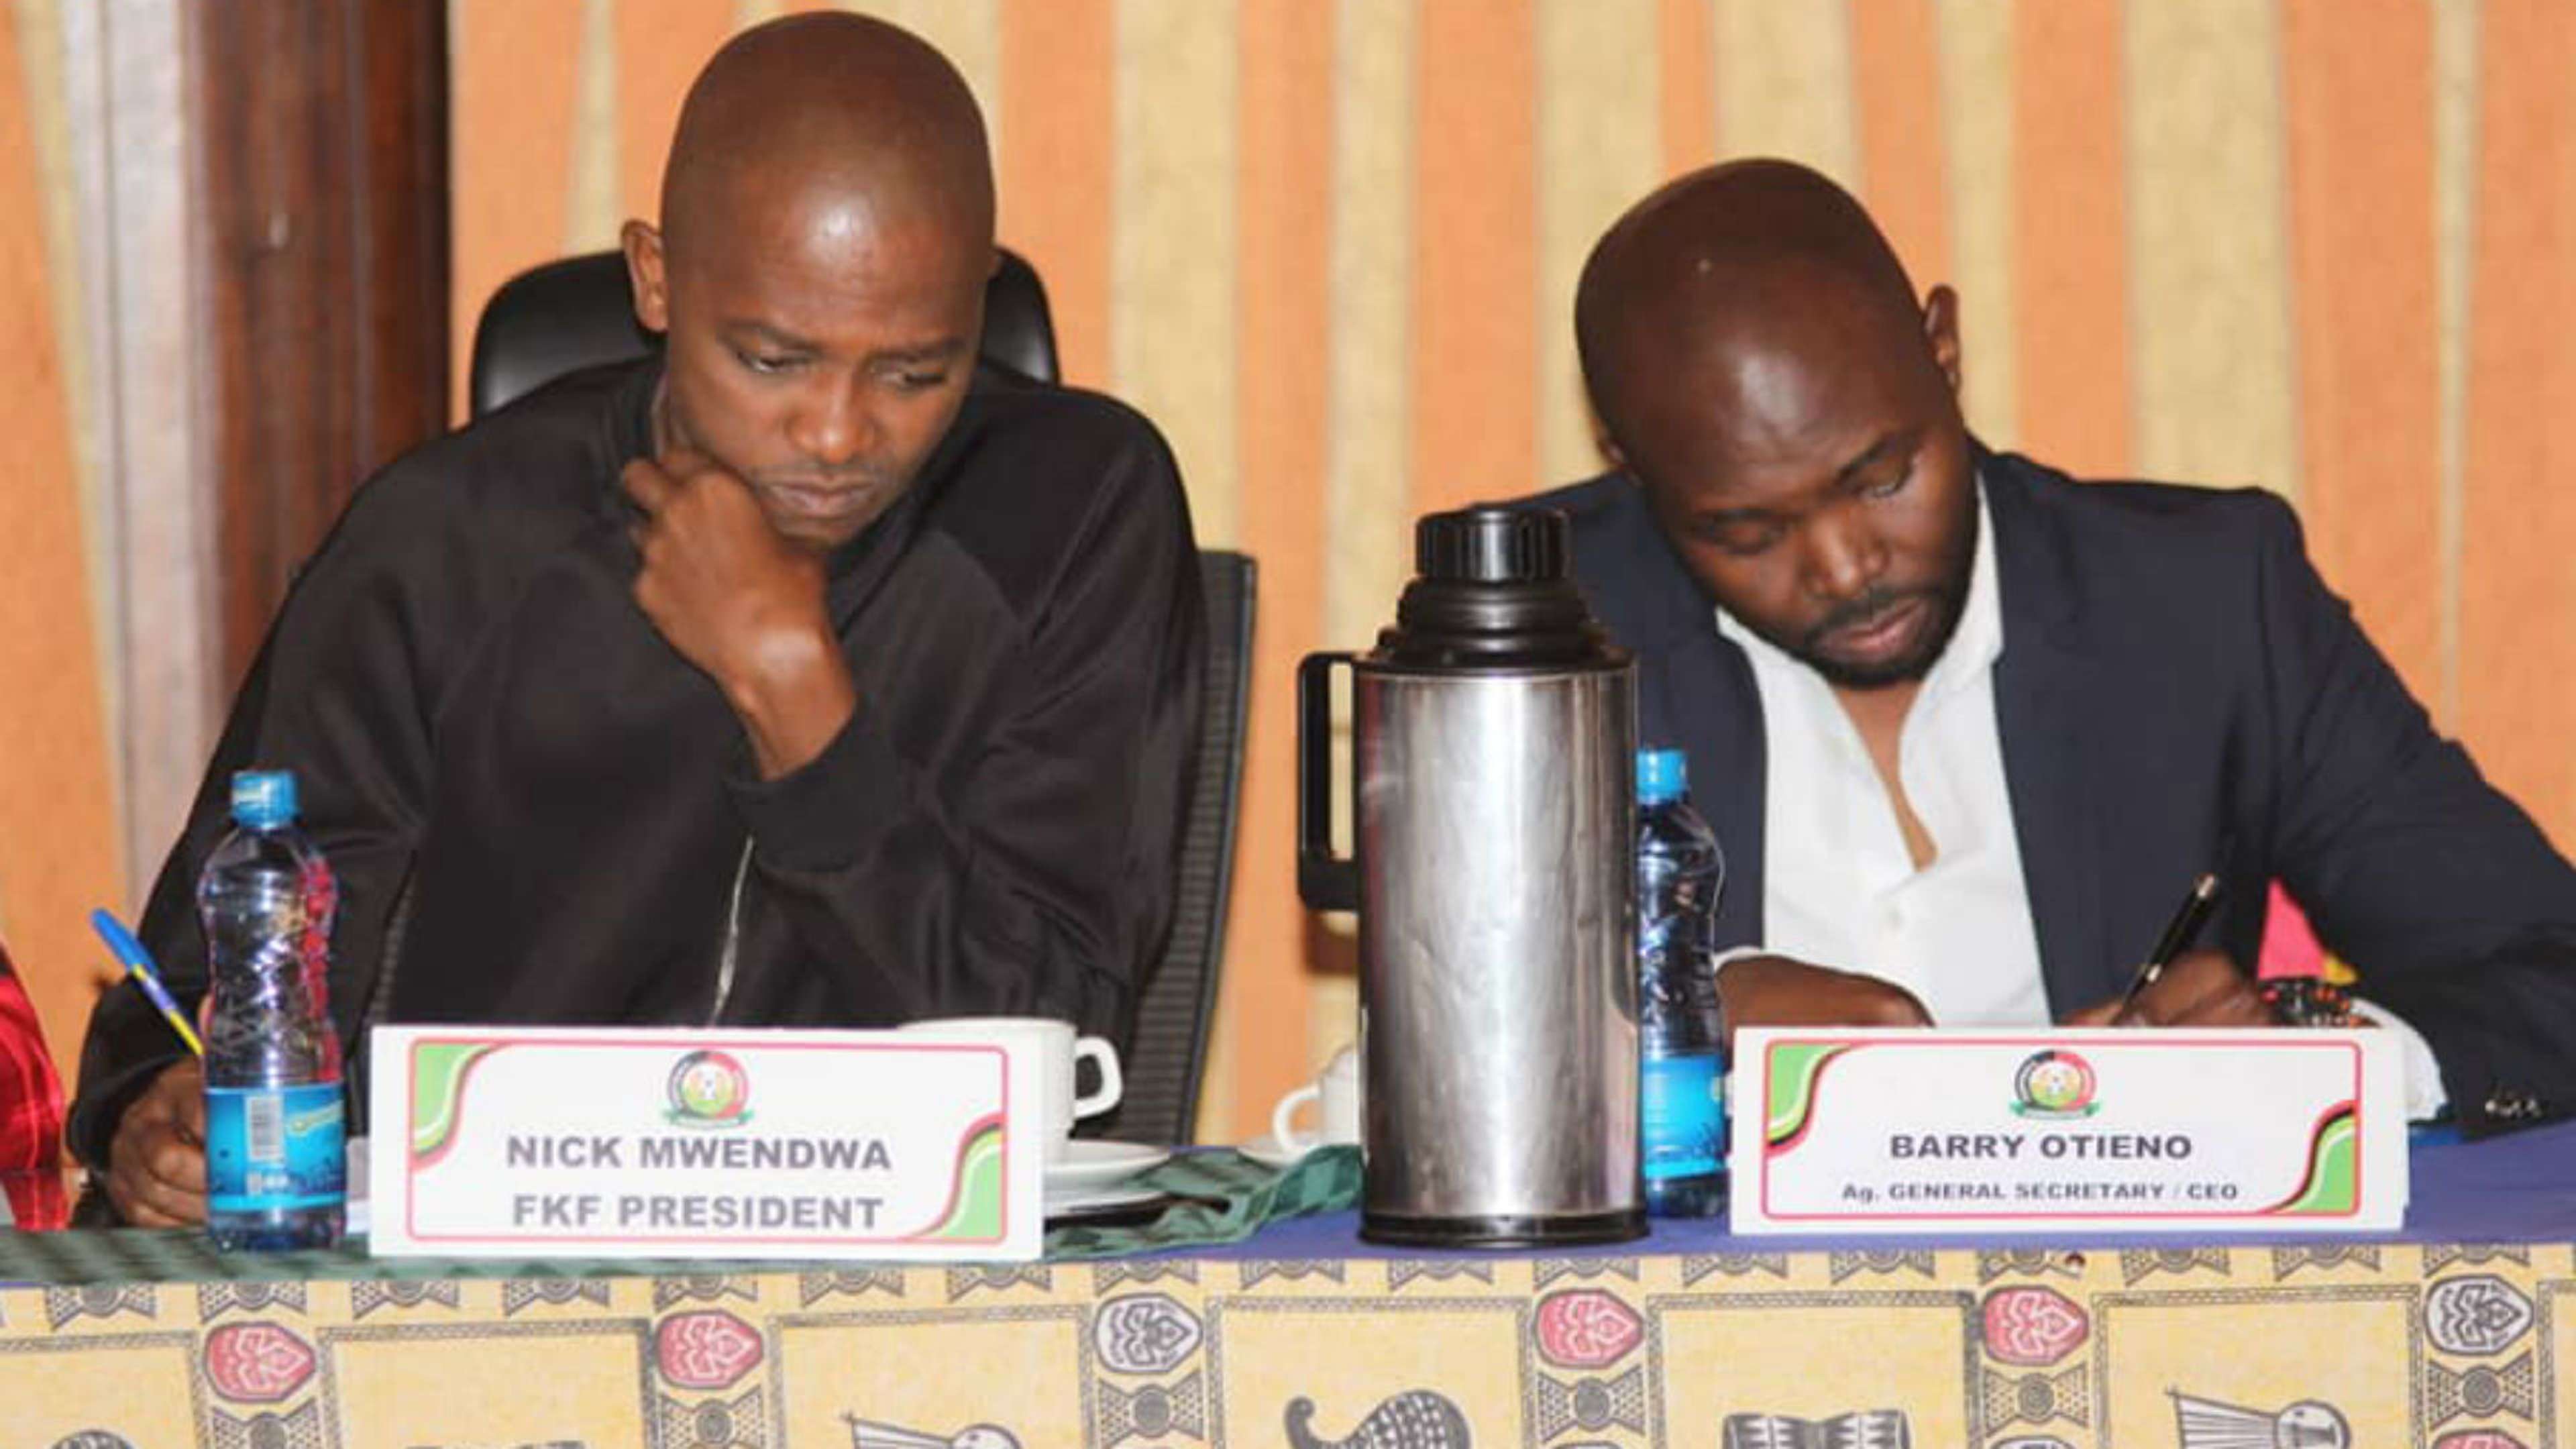 FKF President Nick Mwendwa and Barry Otieno.